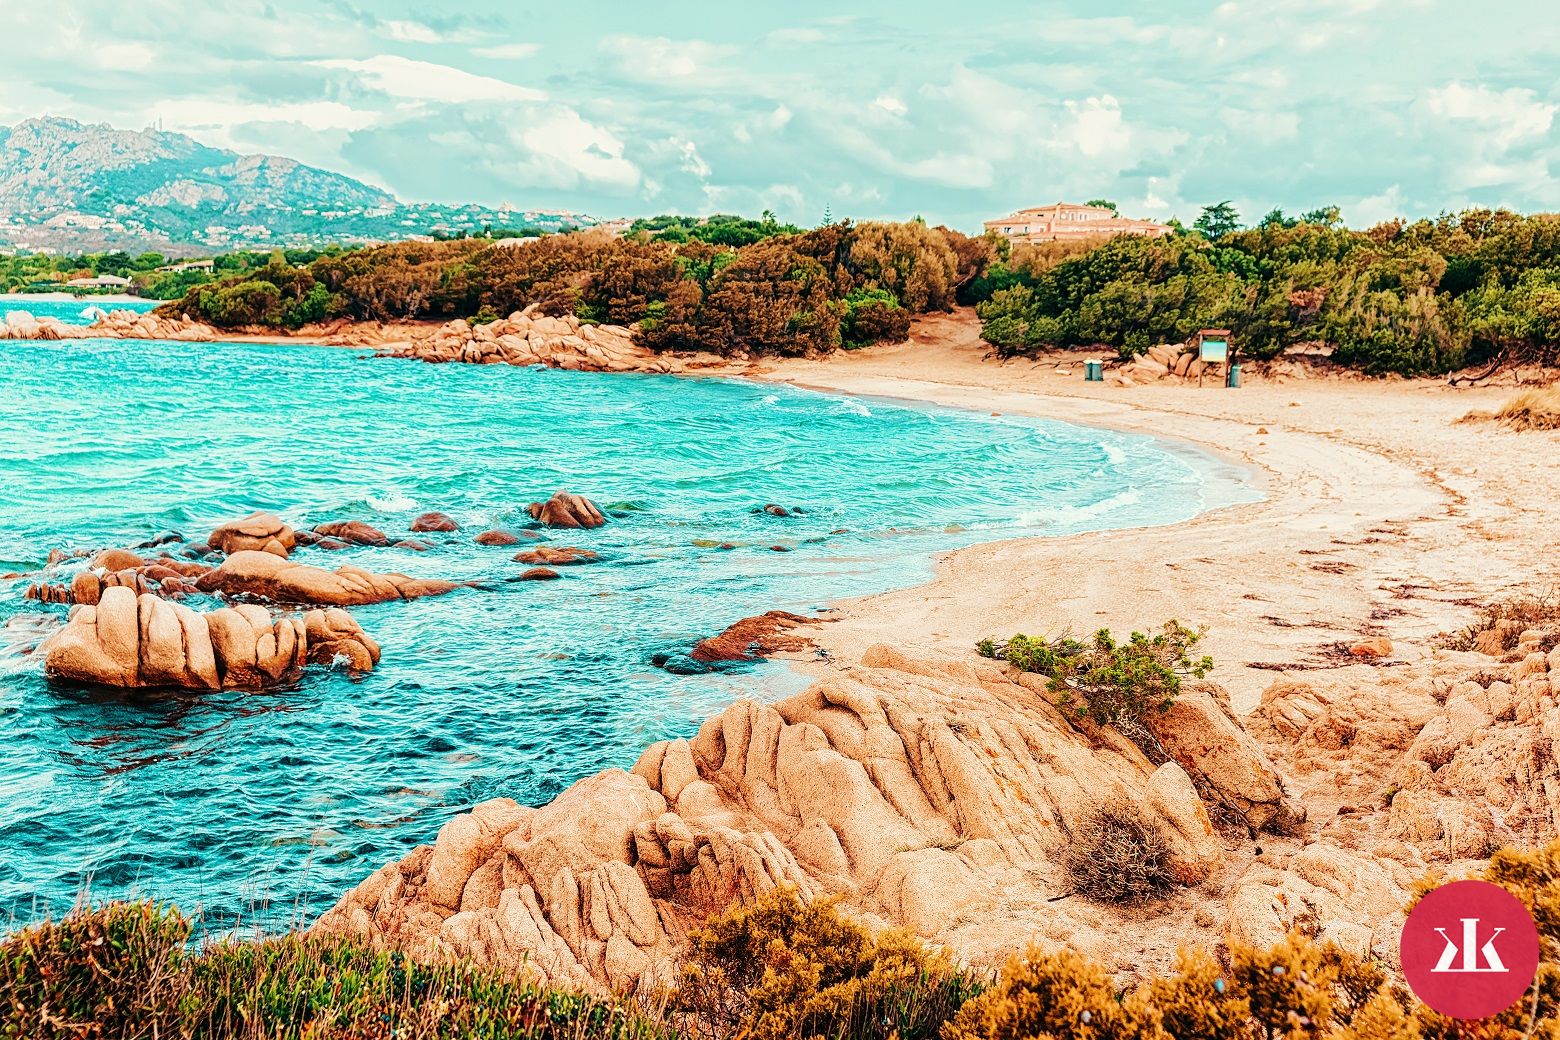 Capriccioli pláž v Sardínii